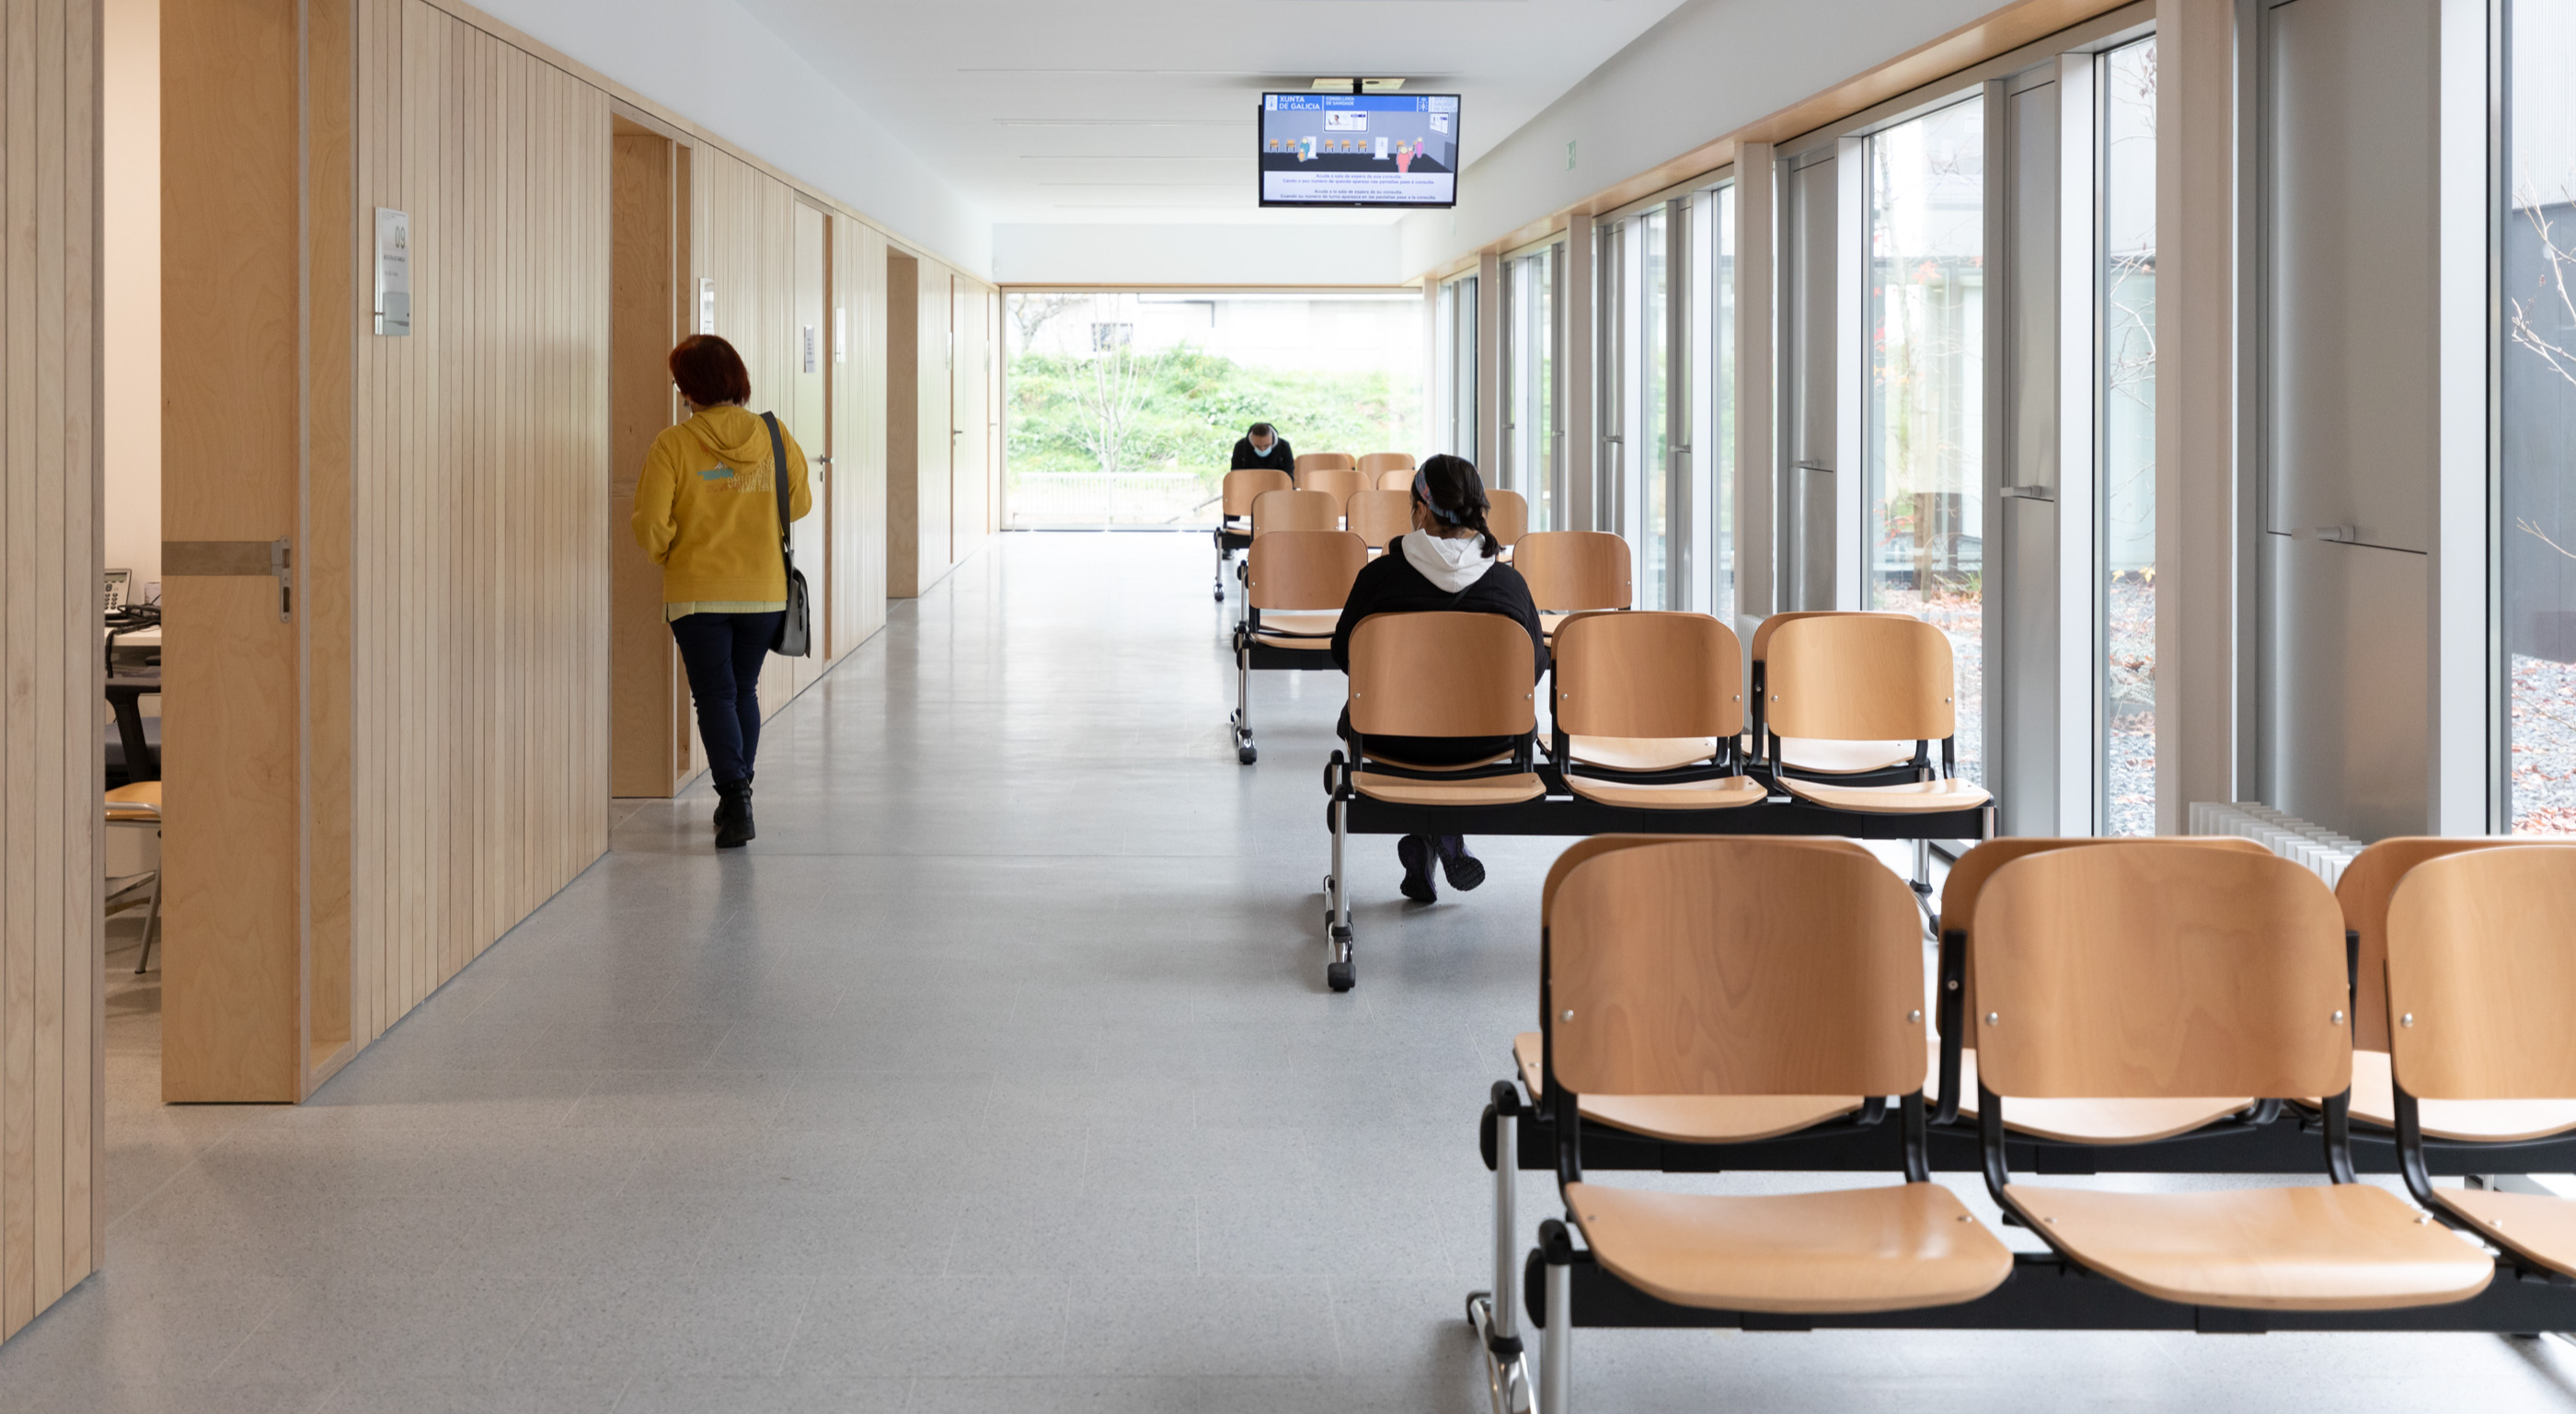 Personas aguardan su turno en la sala de espera un centro sanitario privado